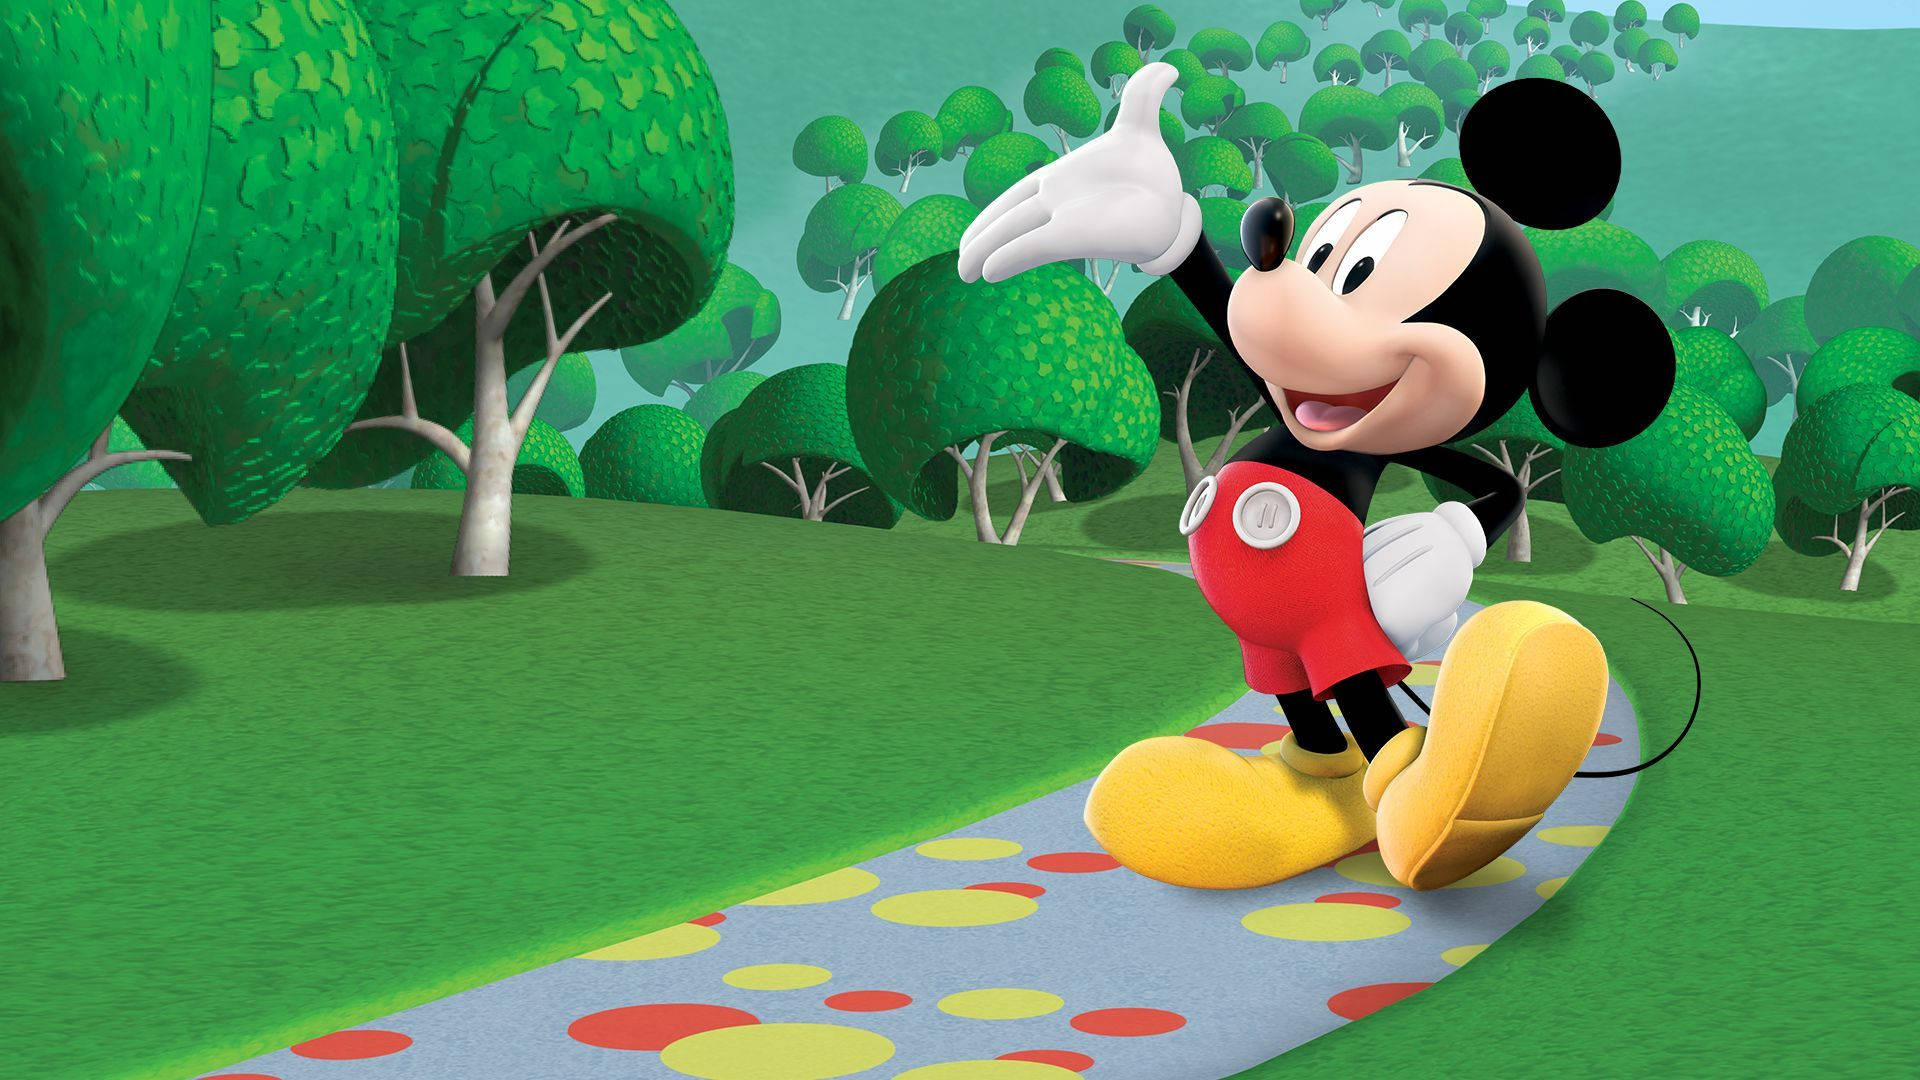 Mickey Mouse Cartoons Art Cinemascopic Desktop Wallpaper Hd High Resolution  1920x1080  Wallpapers13com